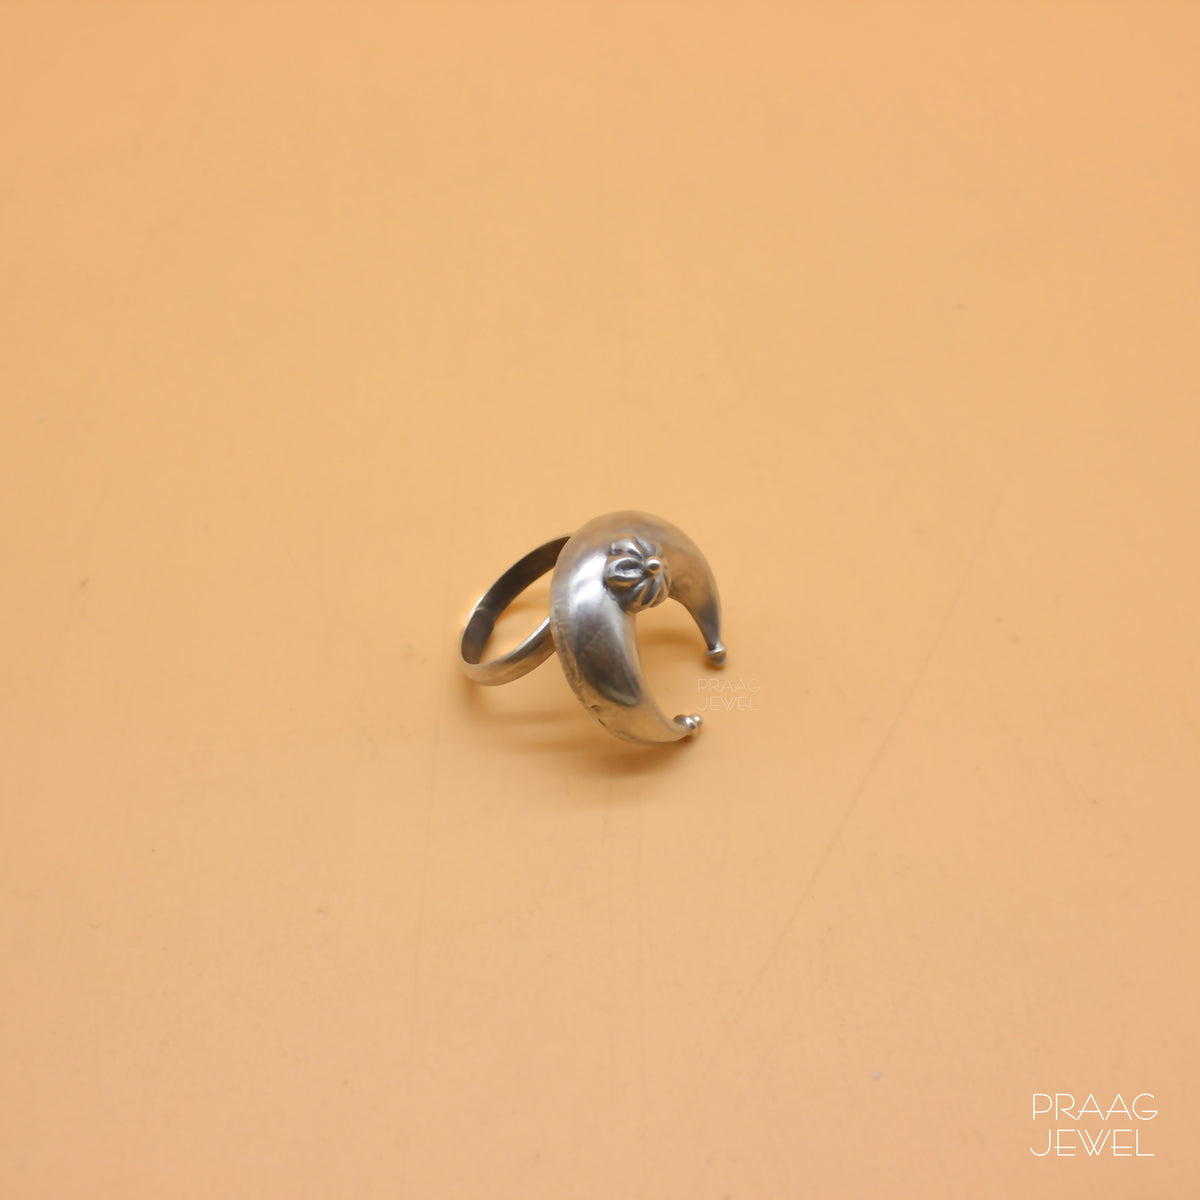 Silver Rings Image | Silver ring | Silver ring image | Silver ring | 925 Rinh Takshlipi ring | Sterling Silver ring | Rings For girls 